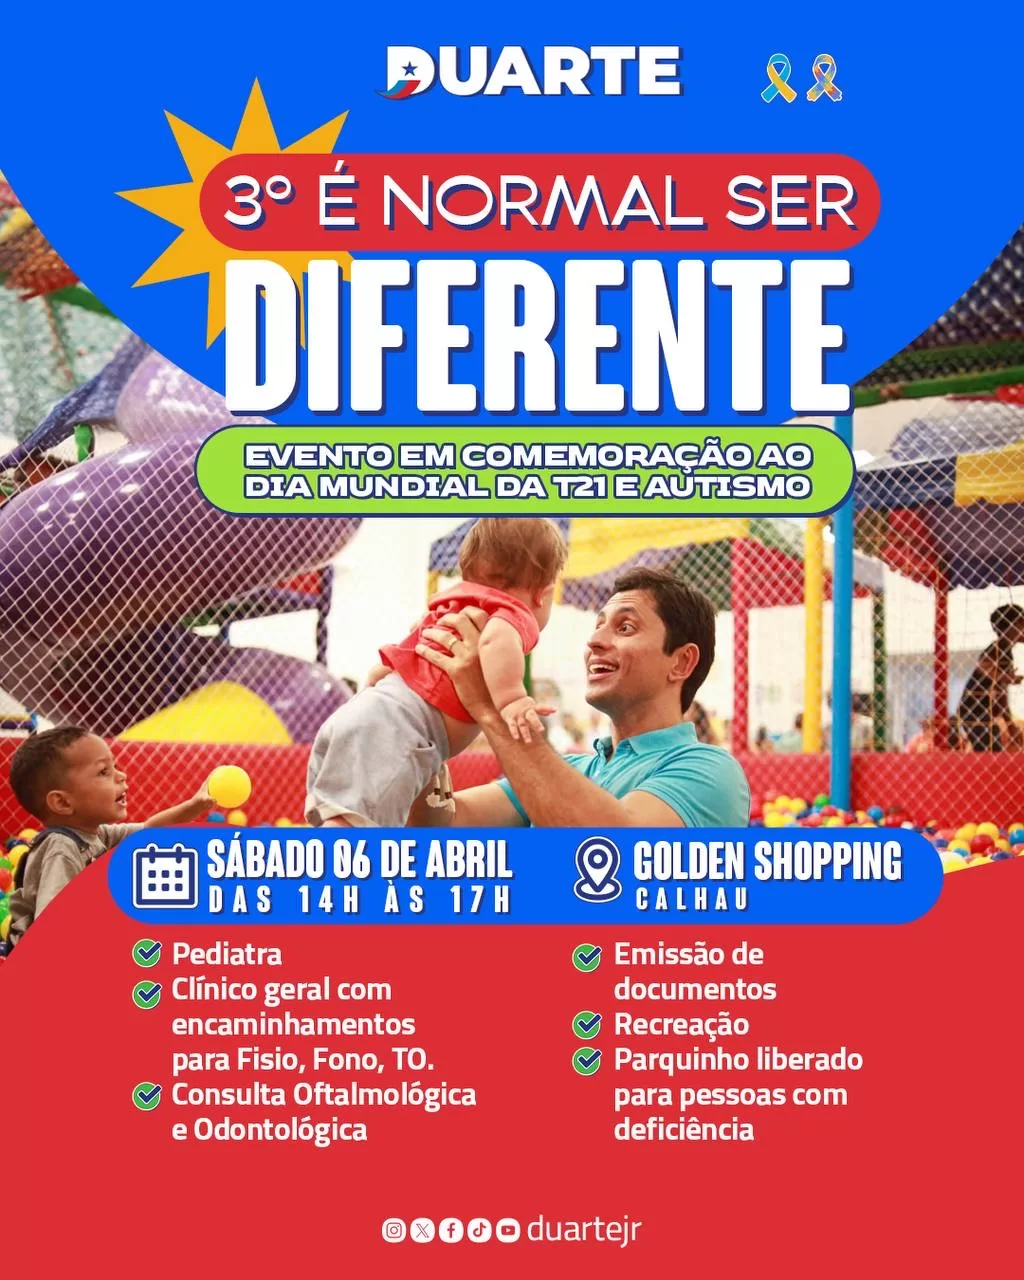 Duarte Jr. promove evento em comemoração ao dia mundial da T21 e autismo